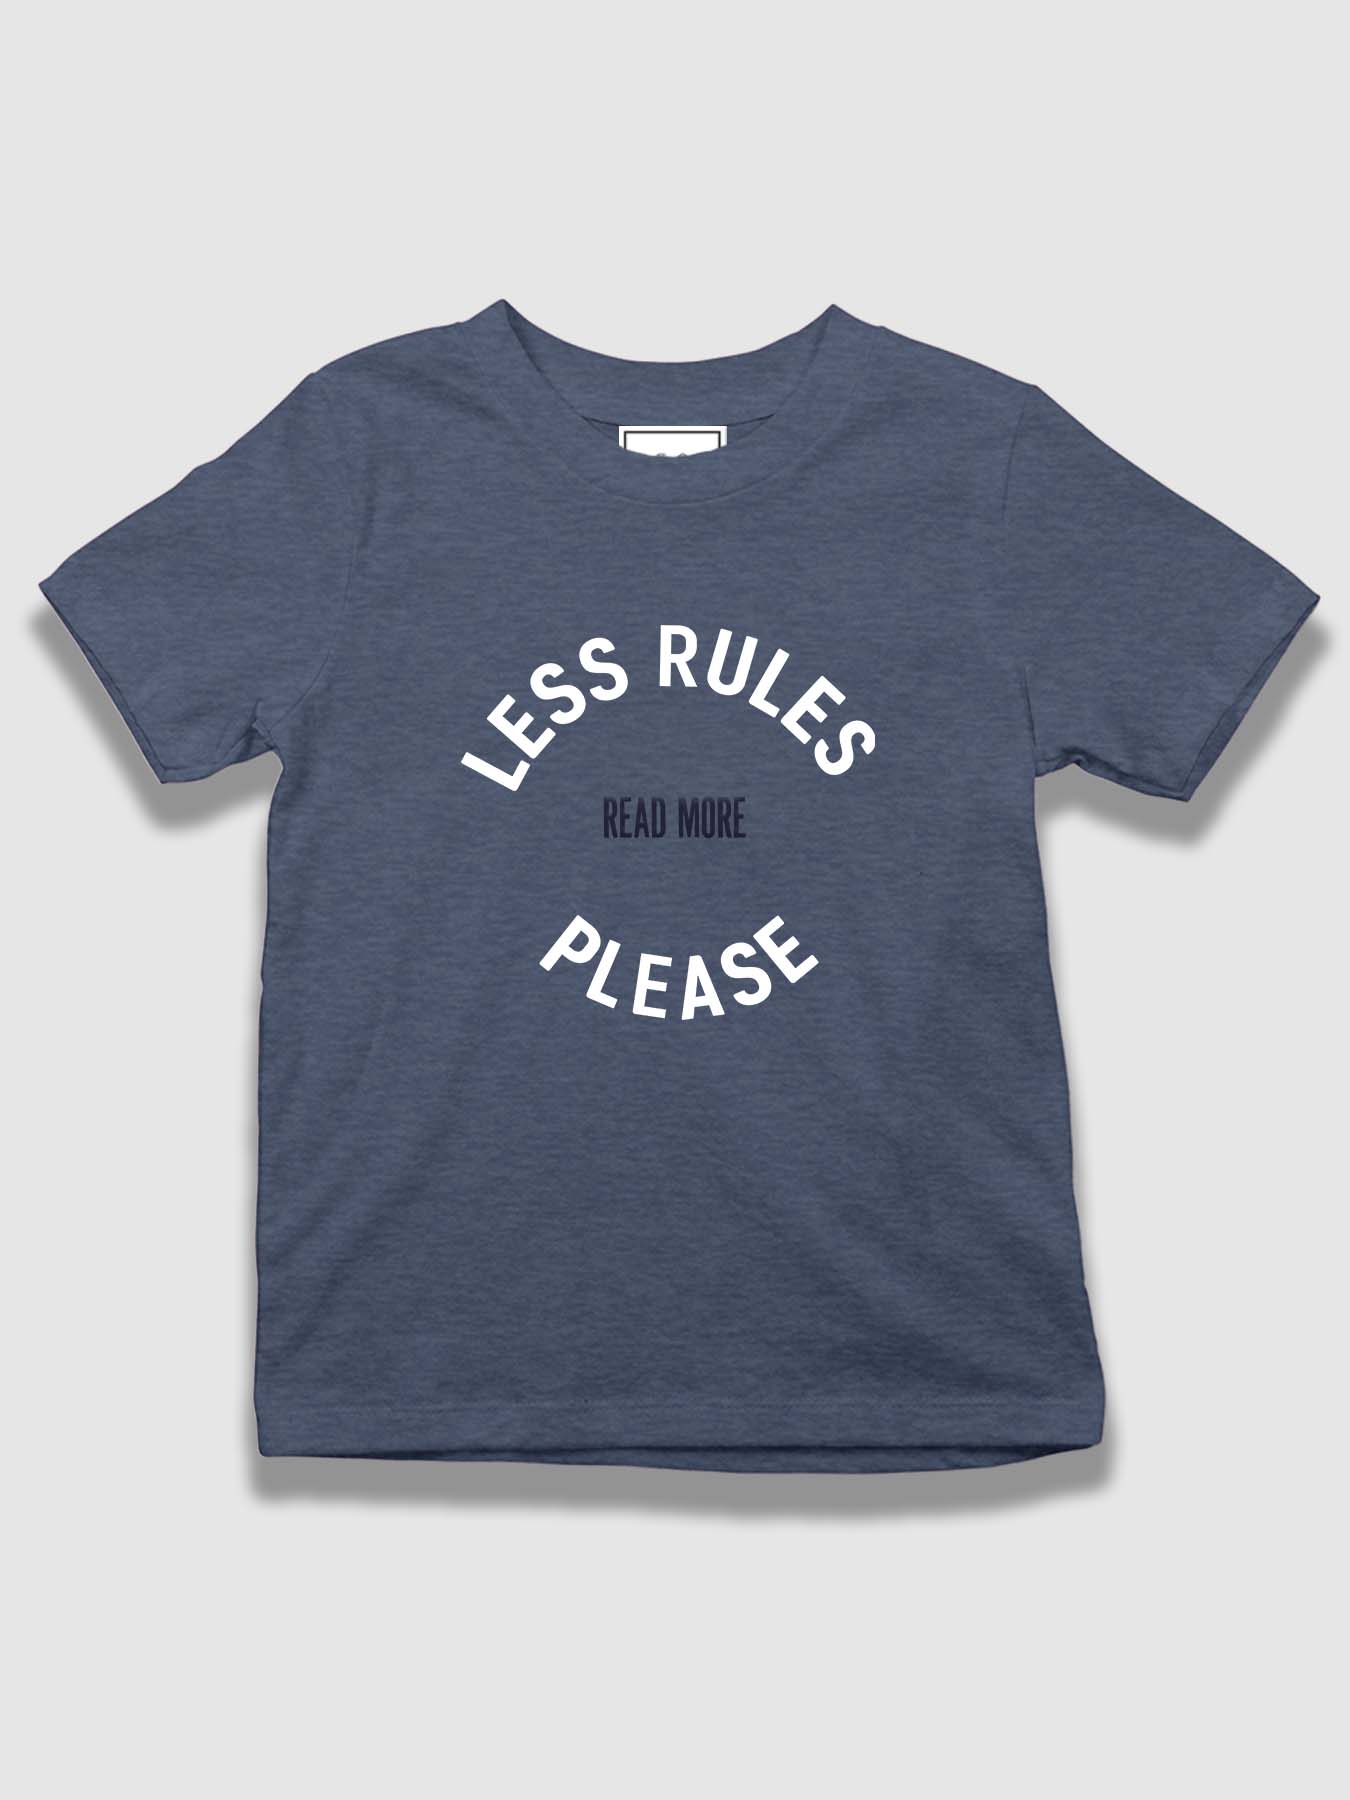 mini Less Rules Please Organic Cotton T-shirt - keos.life